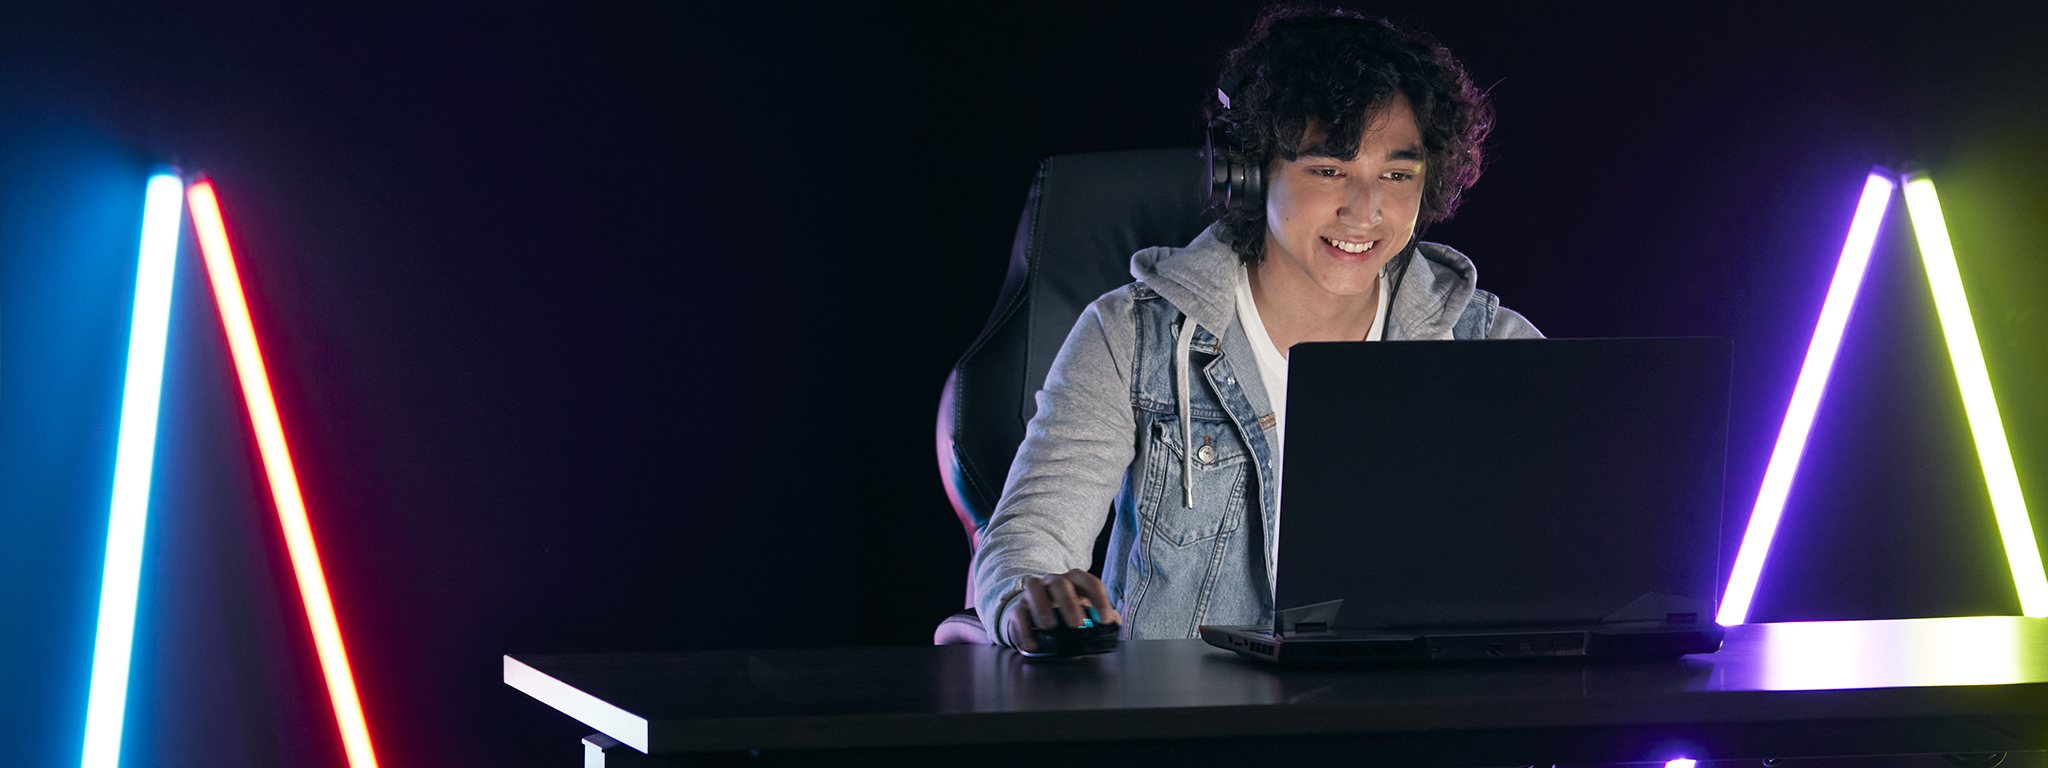 un jeune joueur jouant sur son ordinateur portable dans une pièce sombre